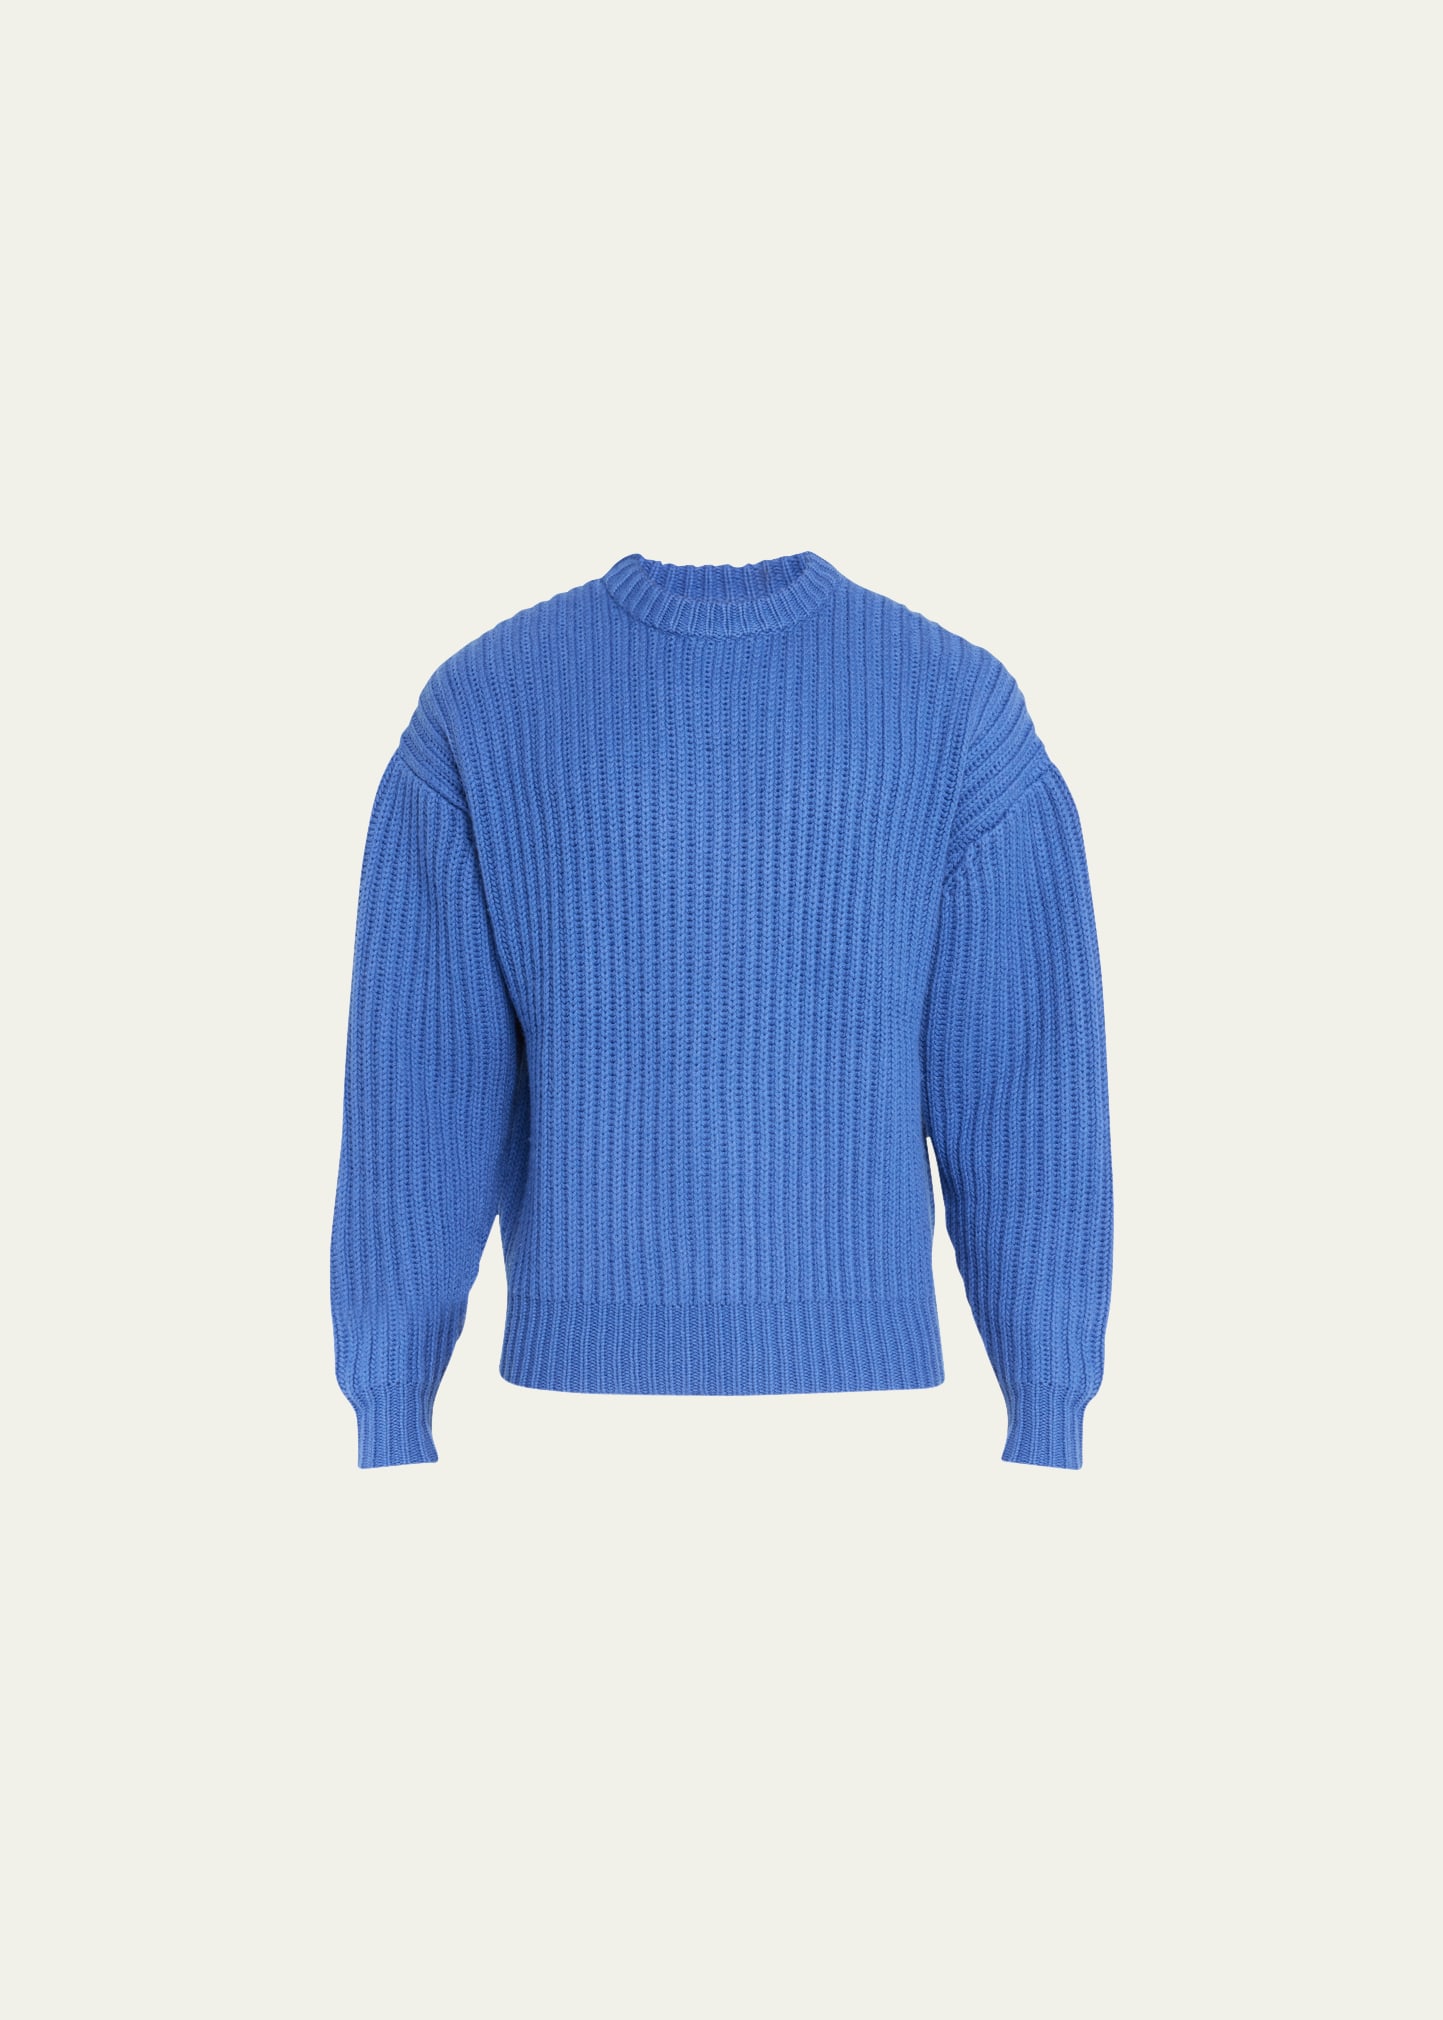 John Elliott Men's Capri Cashmere Crew Sweater - Bergdorf Goodman